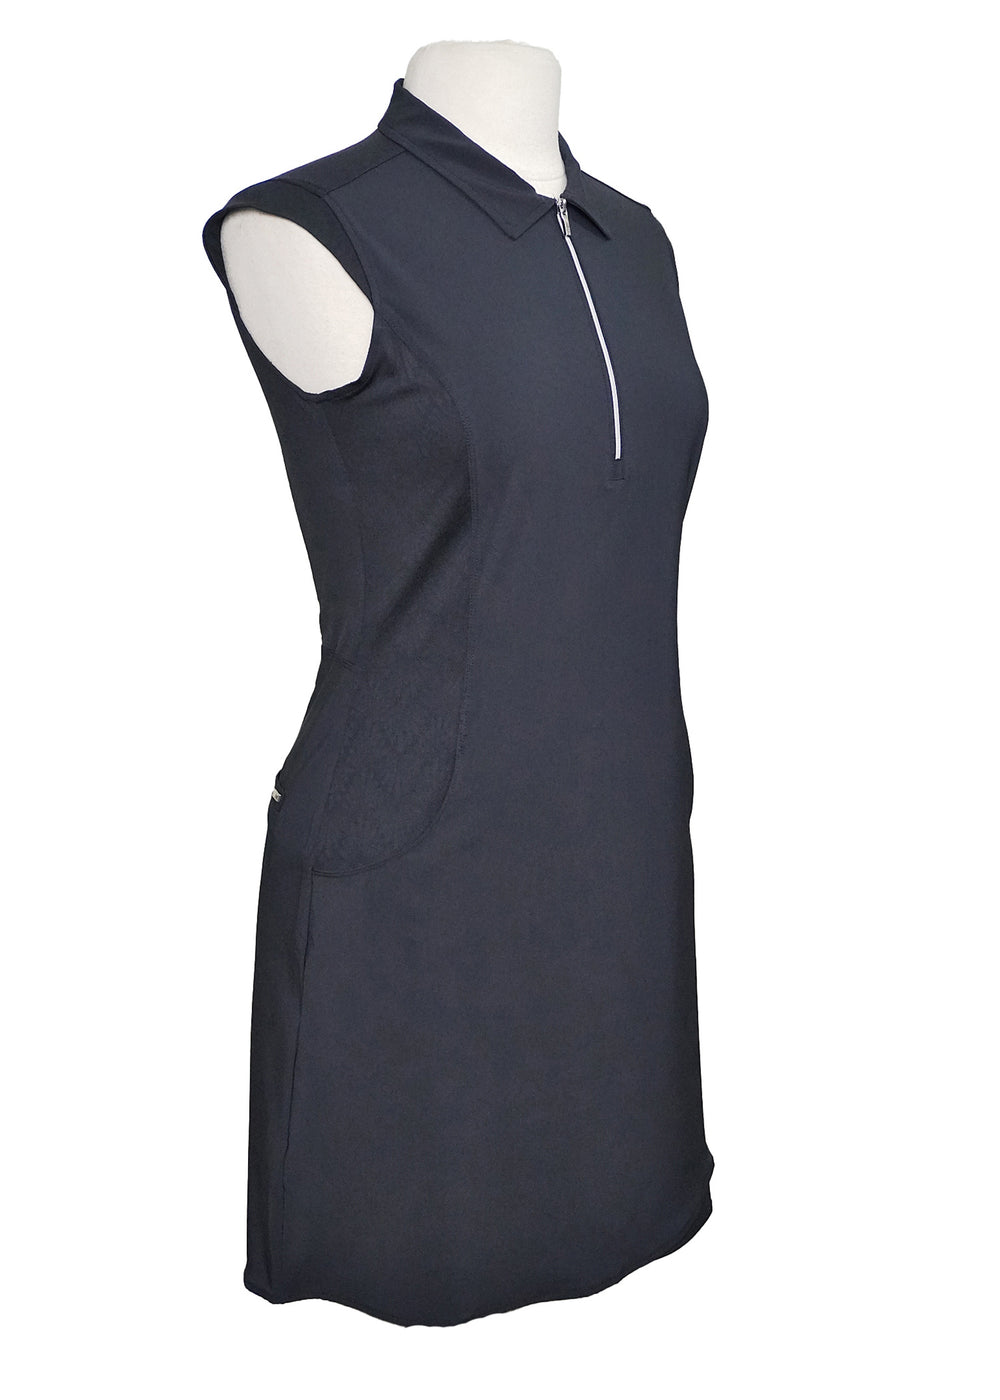 NVO Sport Emilia Dress - Navy - Size Small - Skorzie